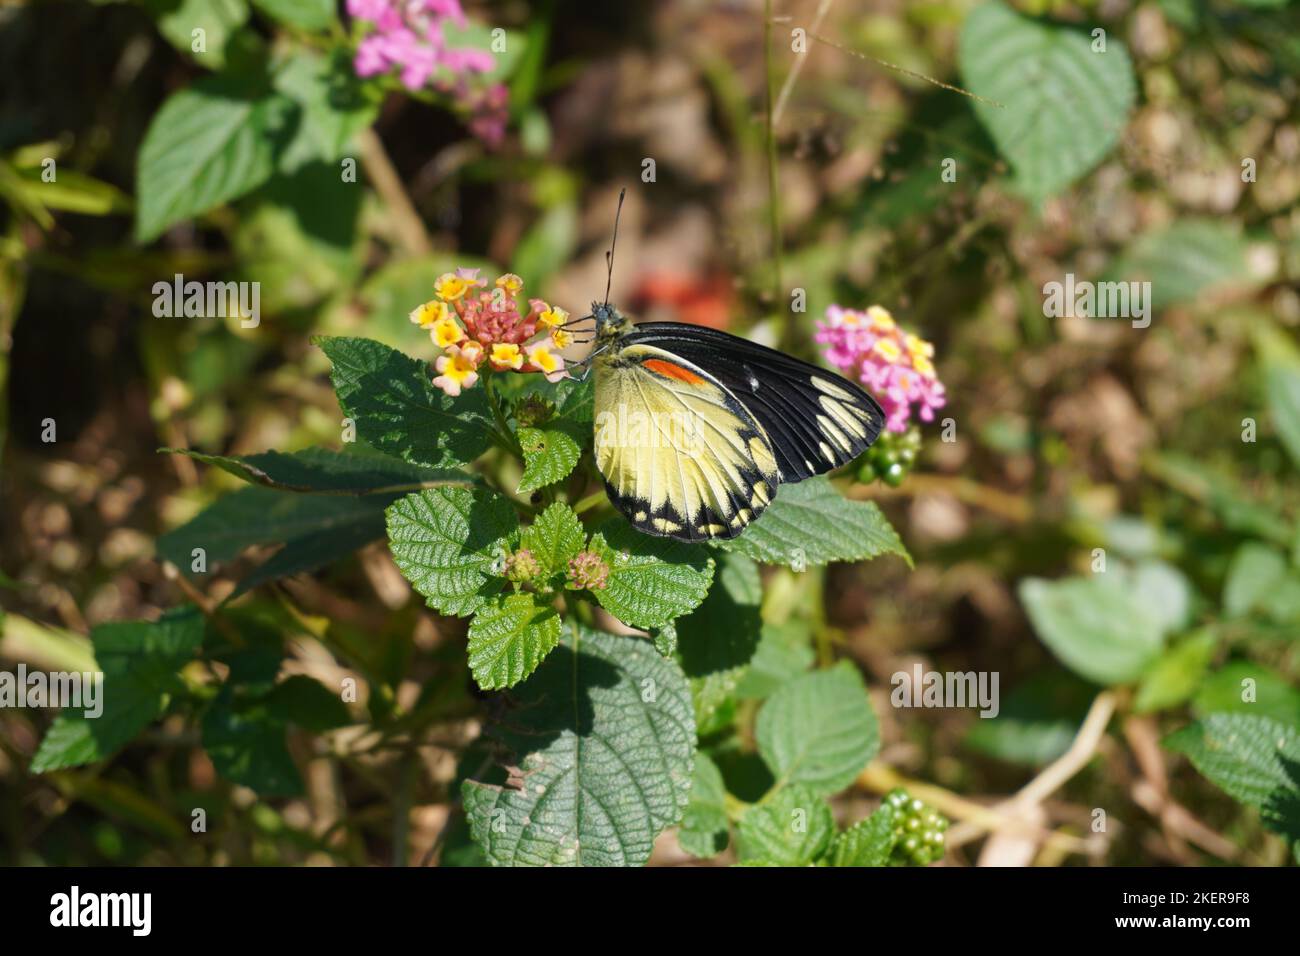 Sehen Sie den wunderschönen schwarzen gelben Schmetterling hoch oben auf einer Blume im Park unter der Sonne Stockfoto